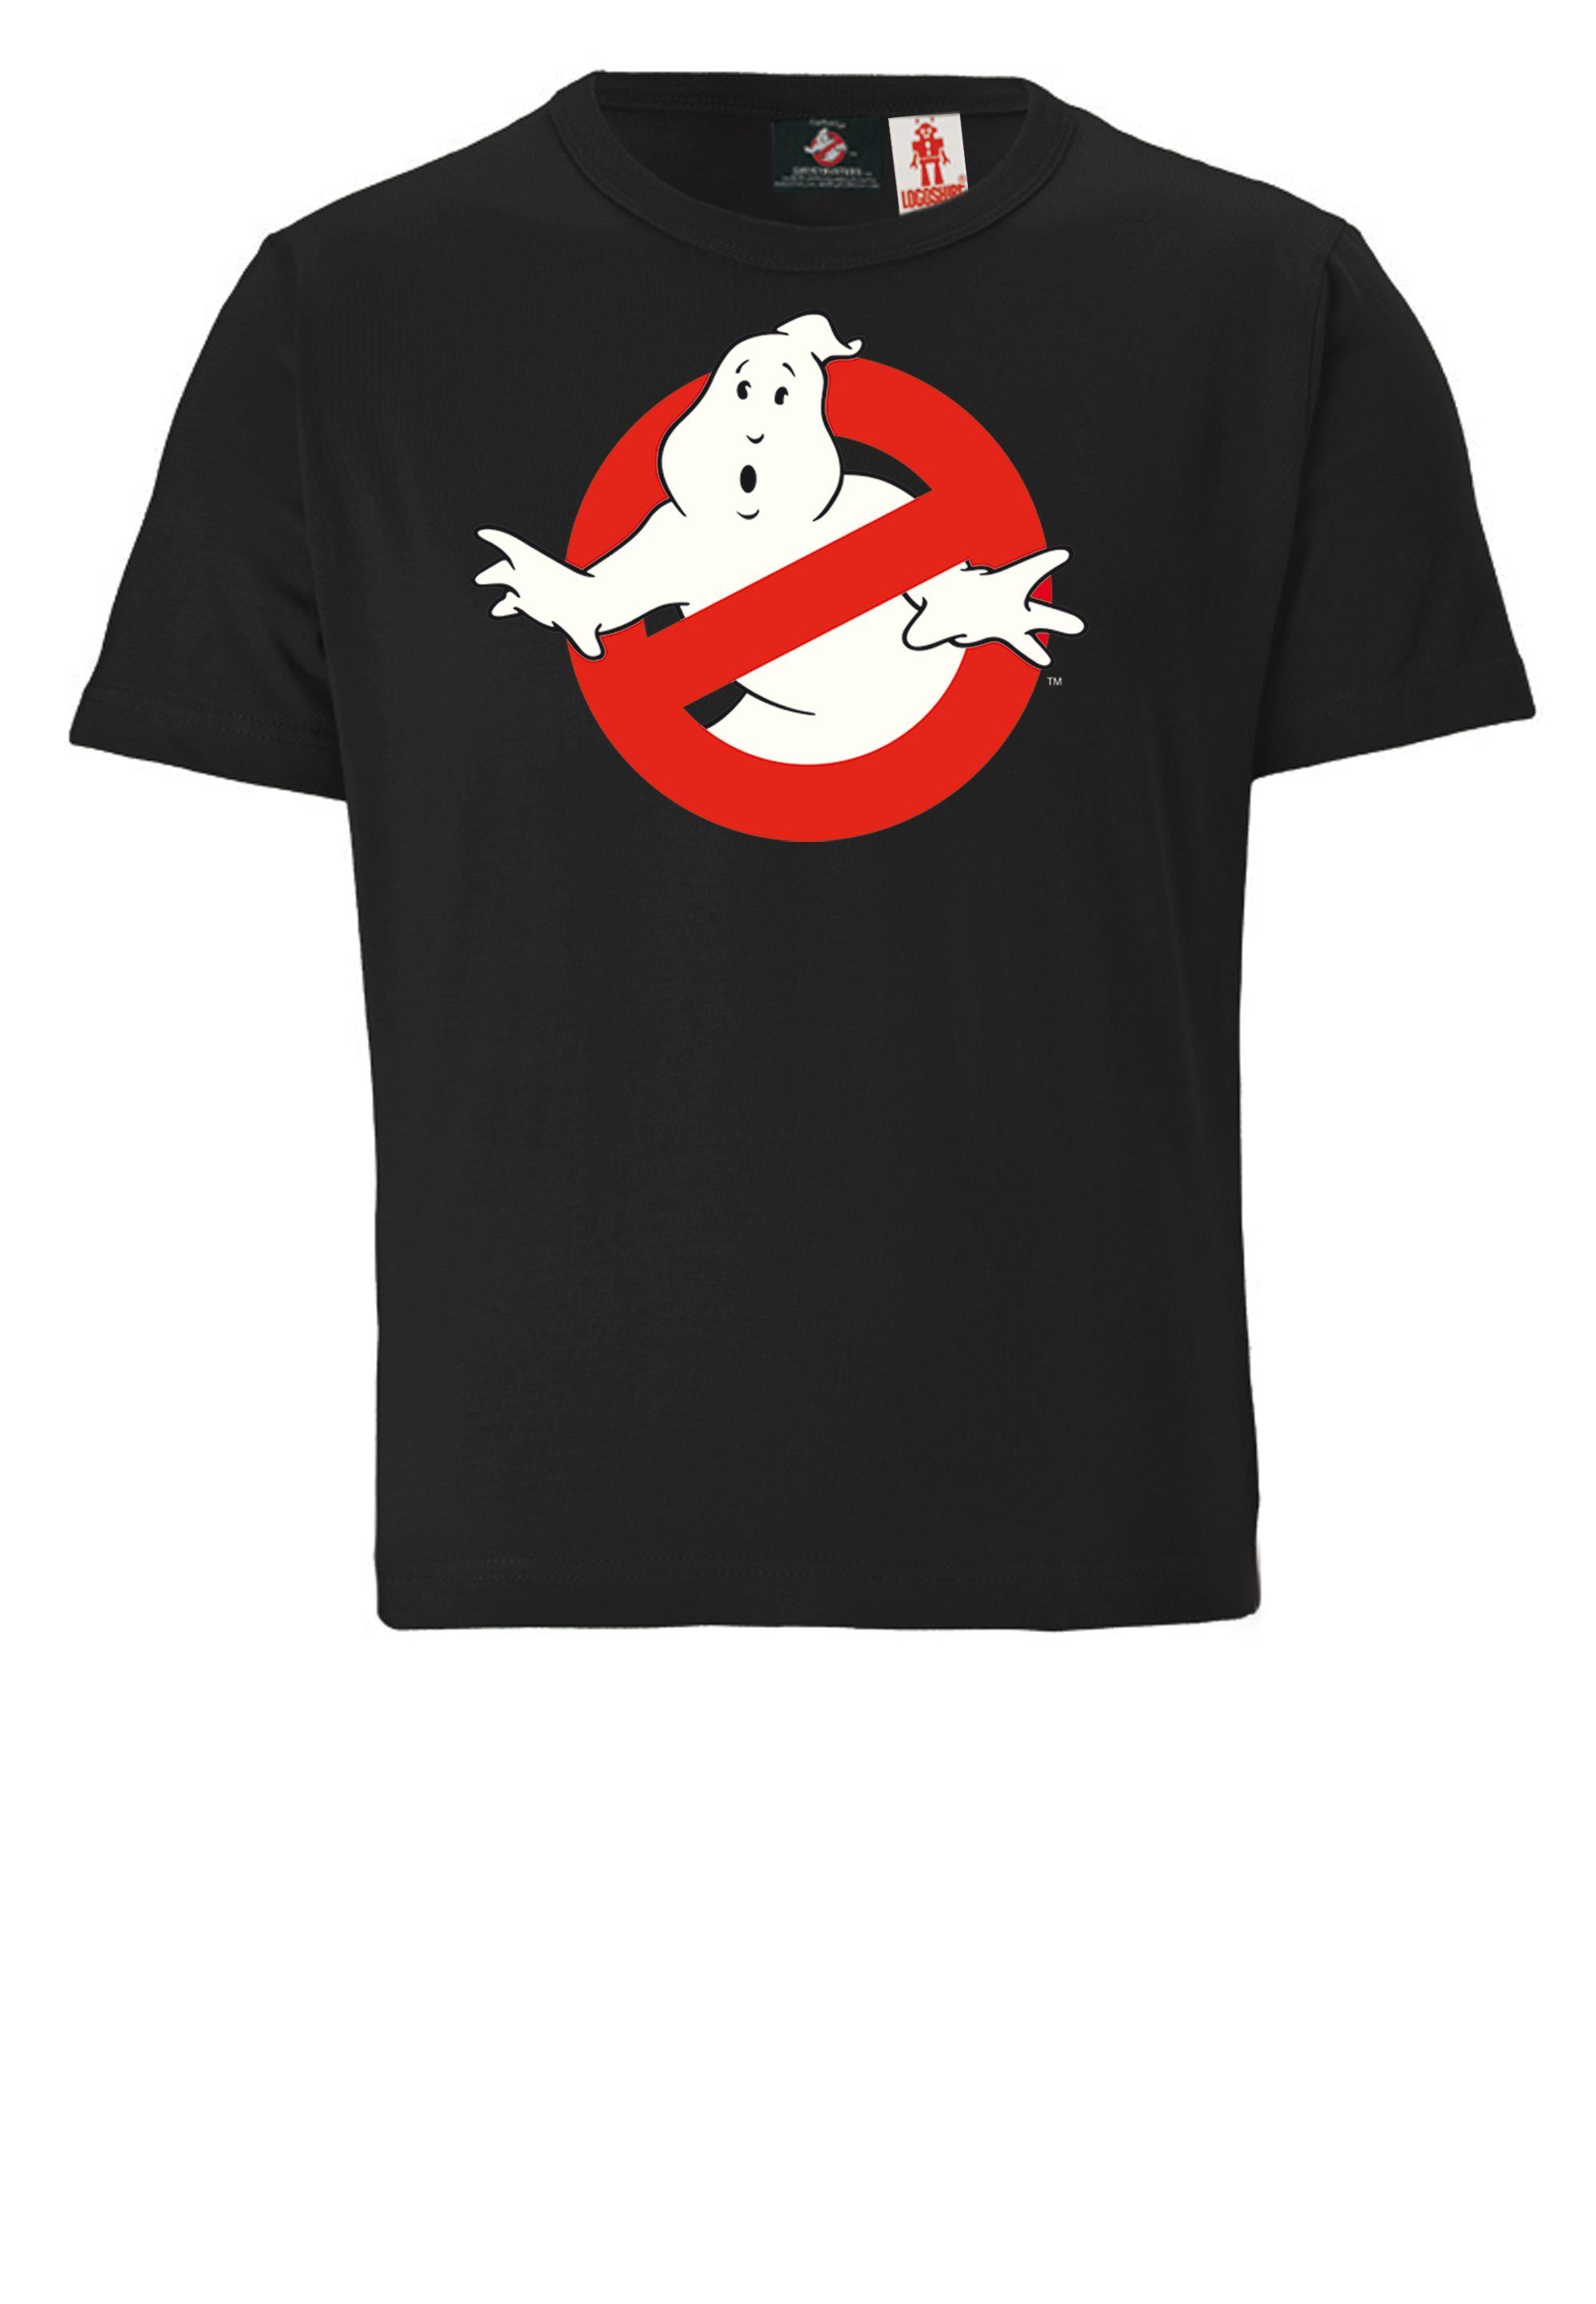 Ghostbusters LOGOSHIRT lizenziertem T-Shirt mit Design